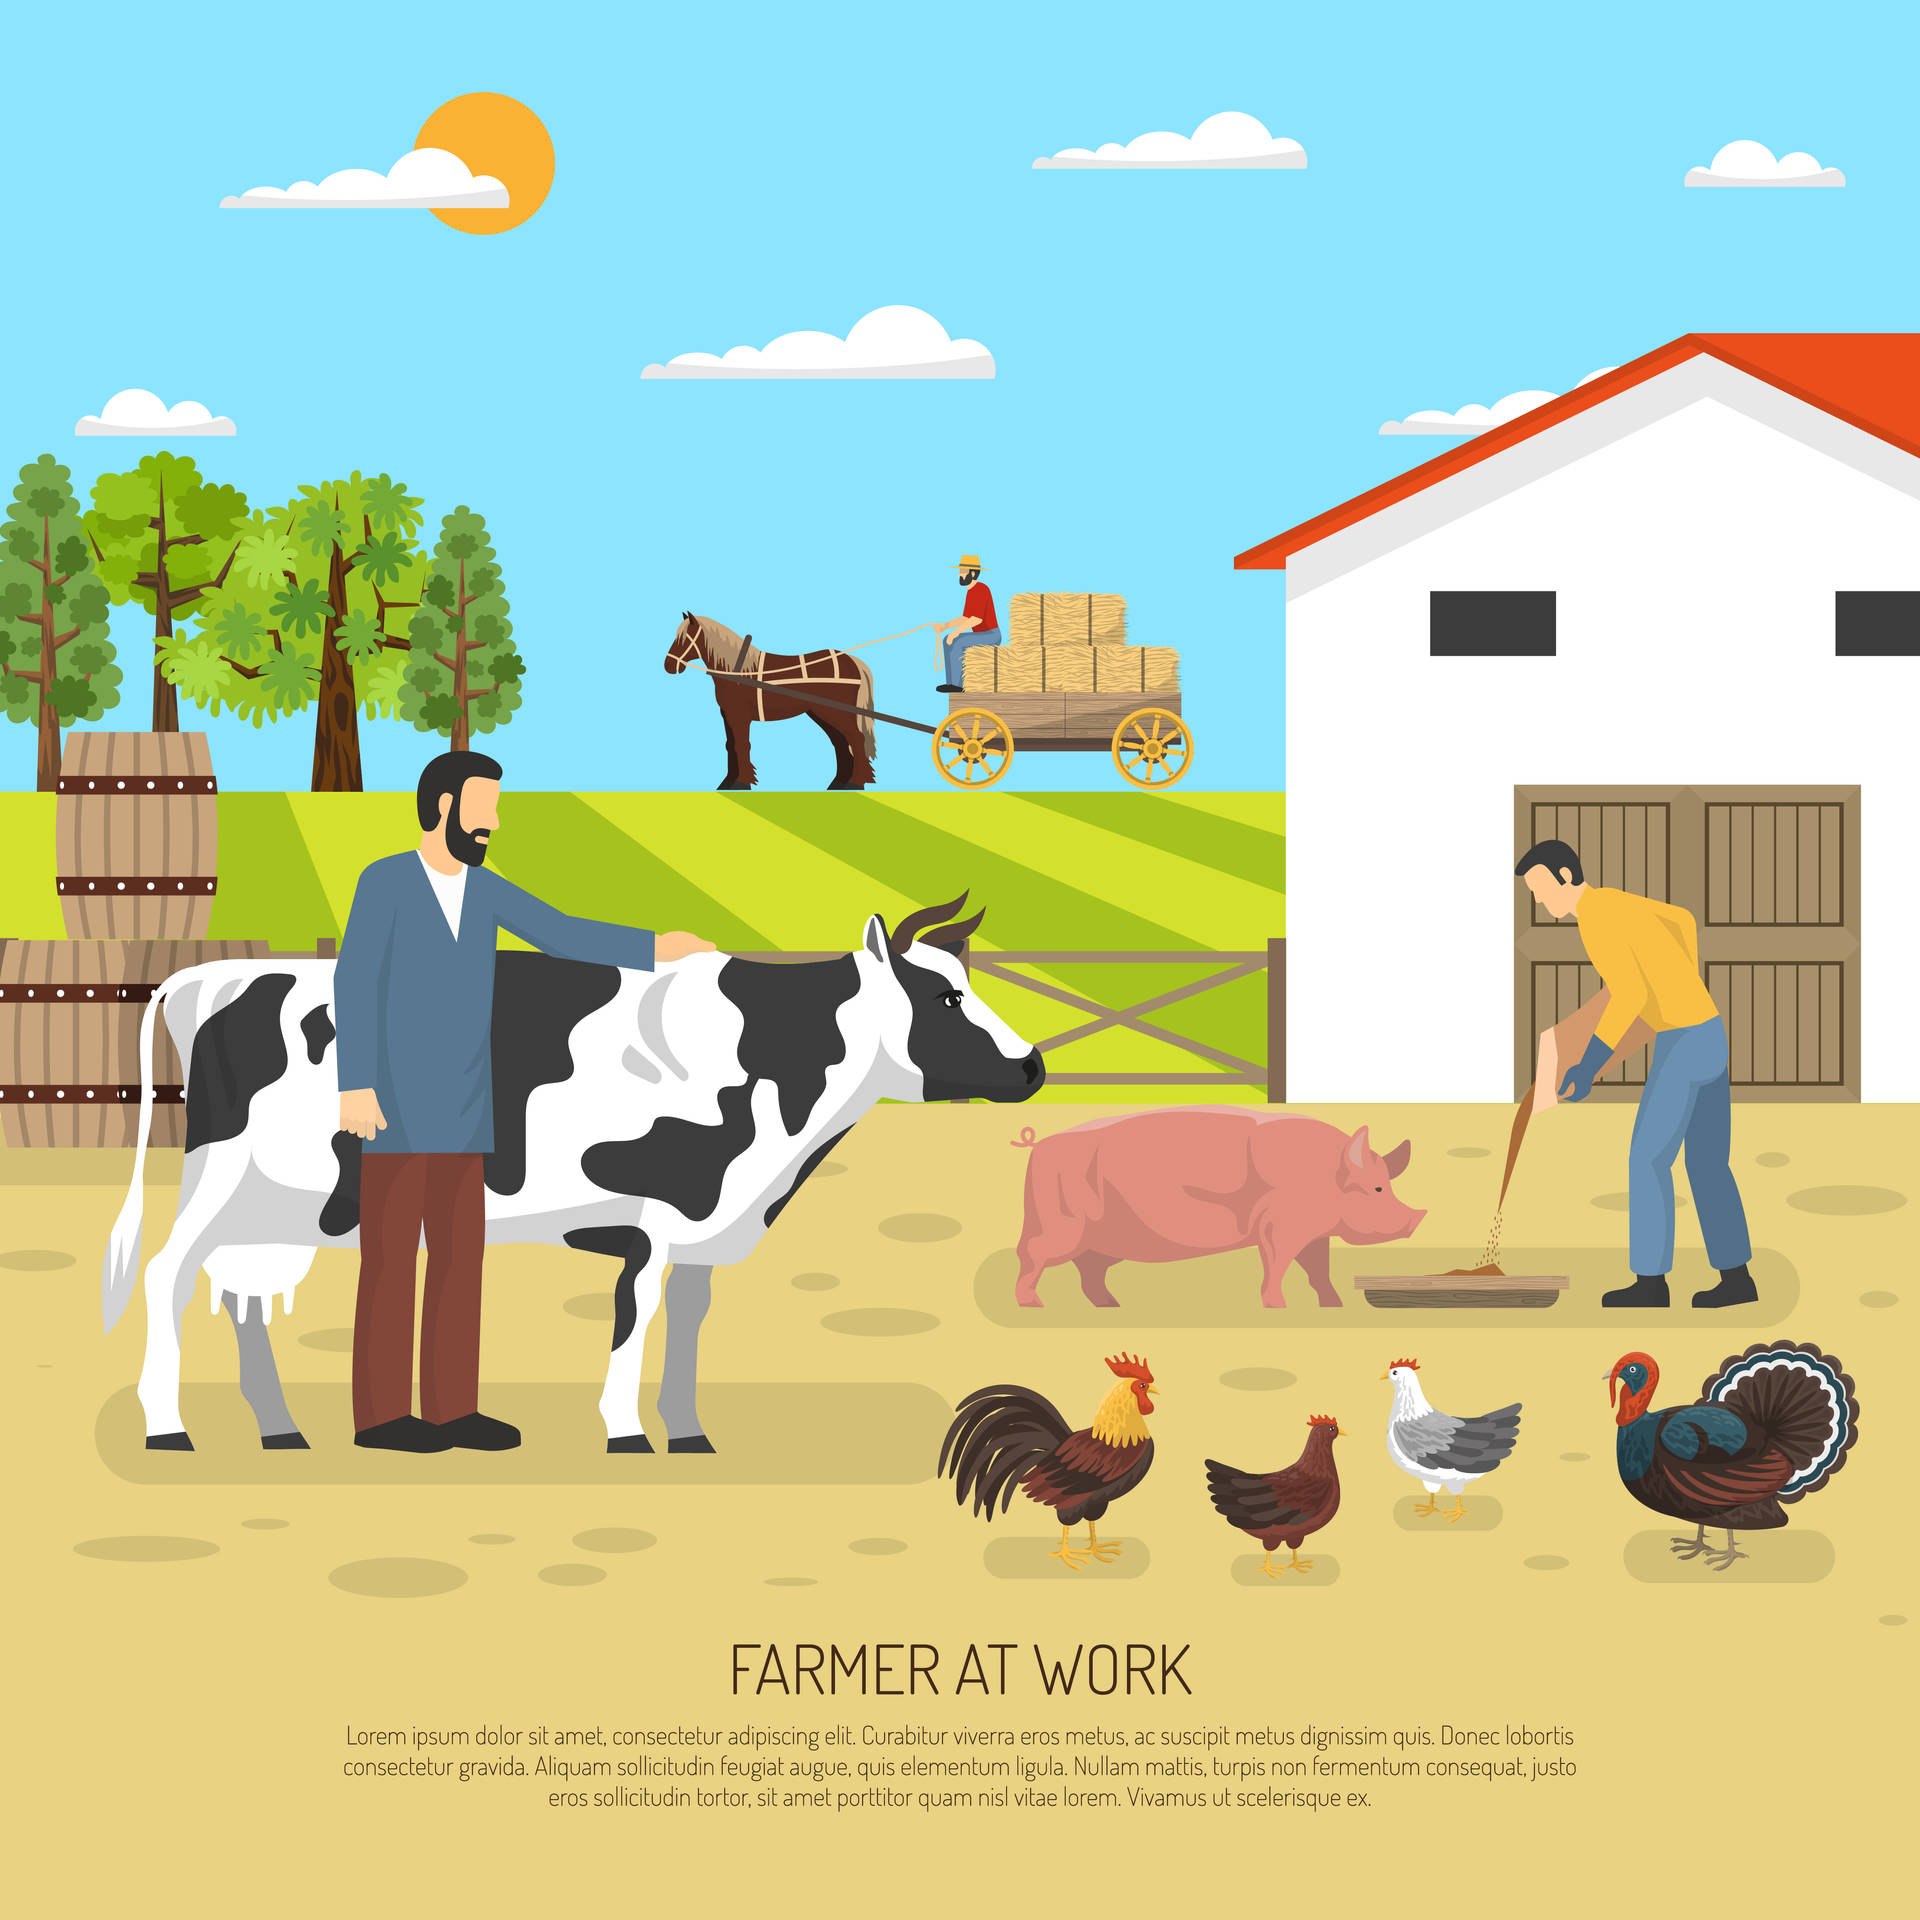 Bönderlantgård Animation Wallpaper